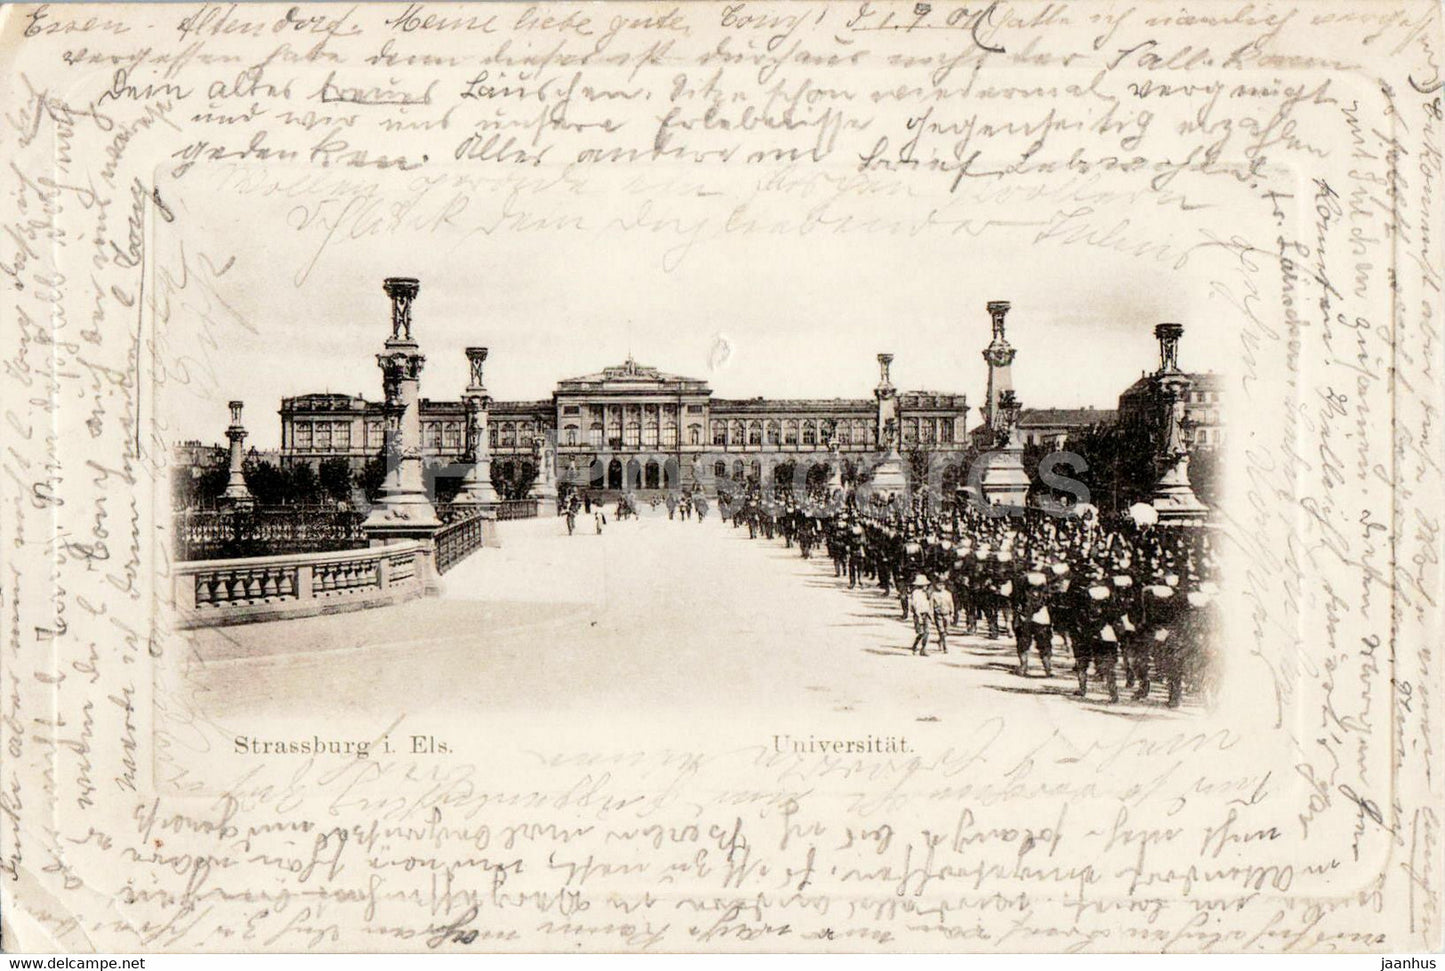 Strasbourg - Strassburg i Els - Universitat - university - old postcard - 1901 - France - used - JH Postcards